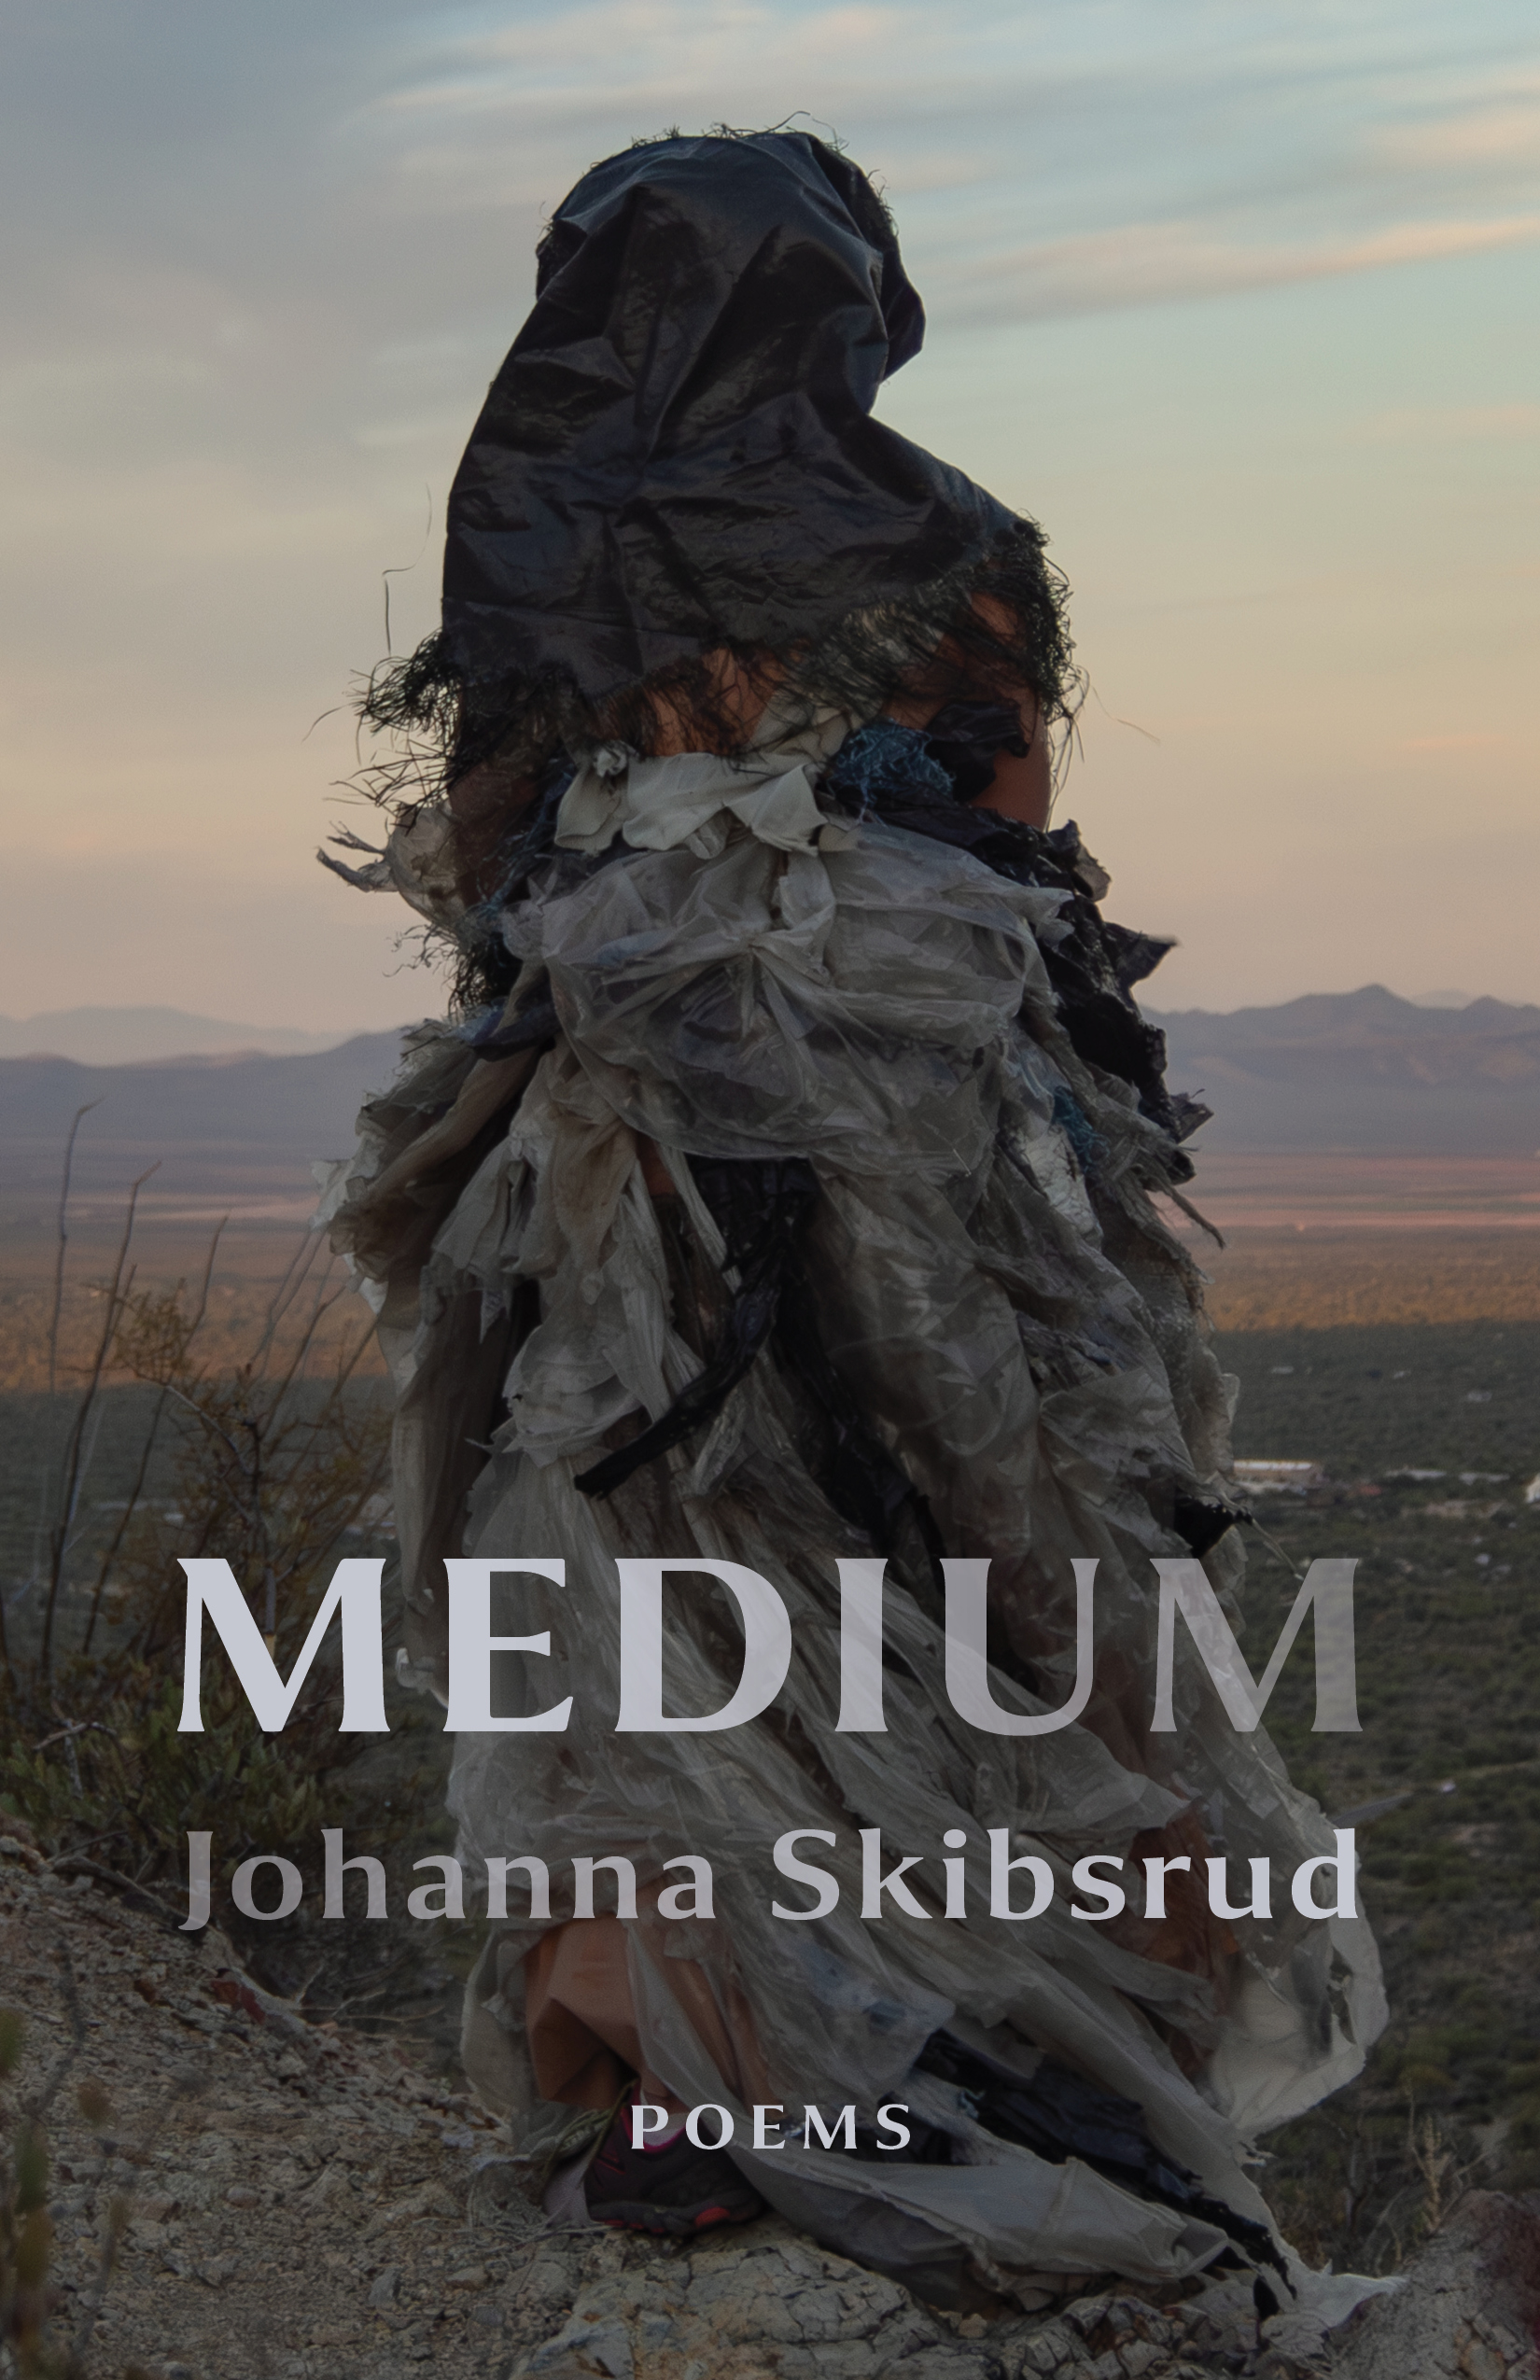 The cover of Medium by Johanna Skibsrud